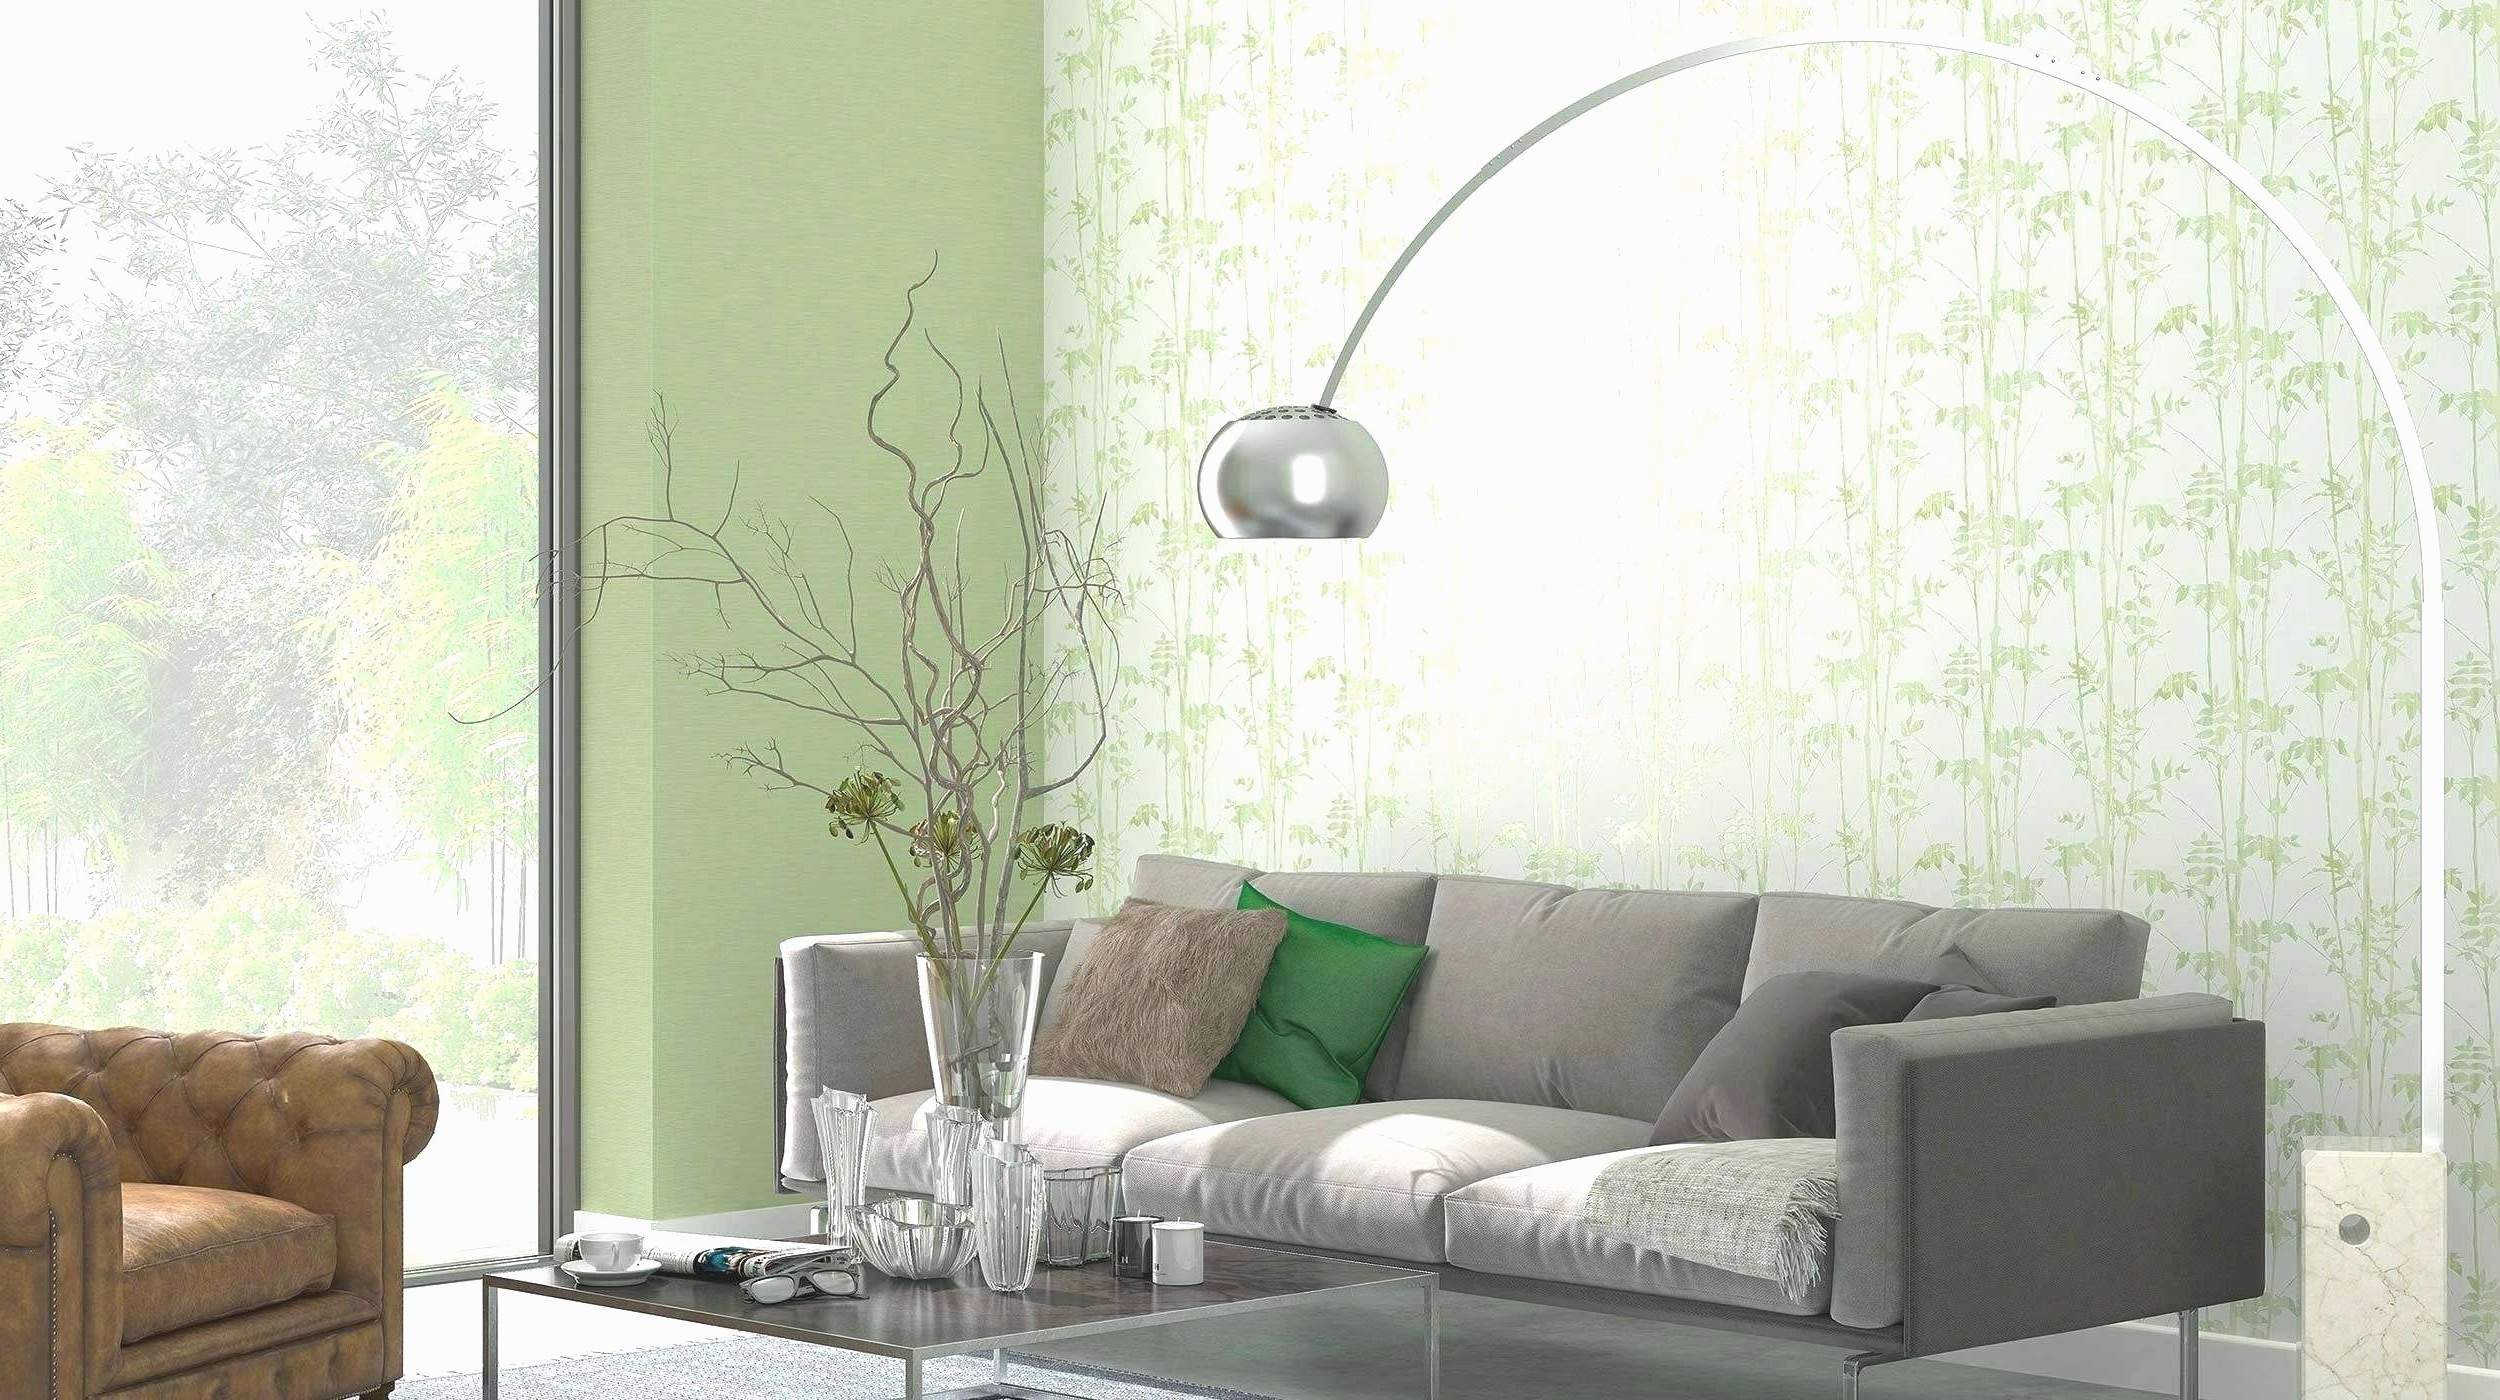 Garten Deko Metall Einzigartig 25 Luxus Wanddeko Wohnzimmer Metall Das Beste Von